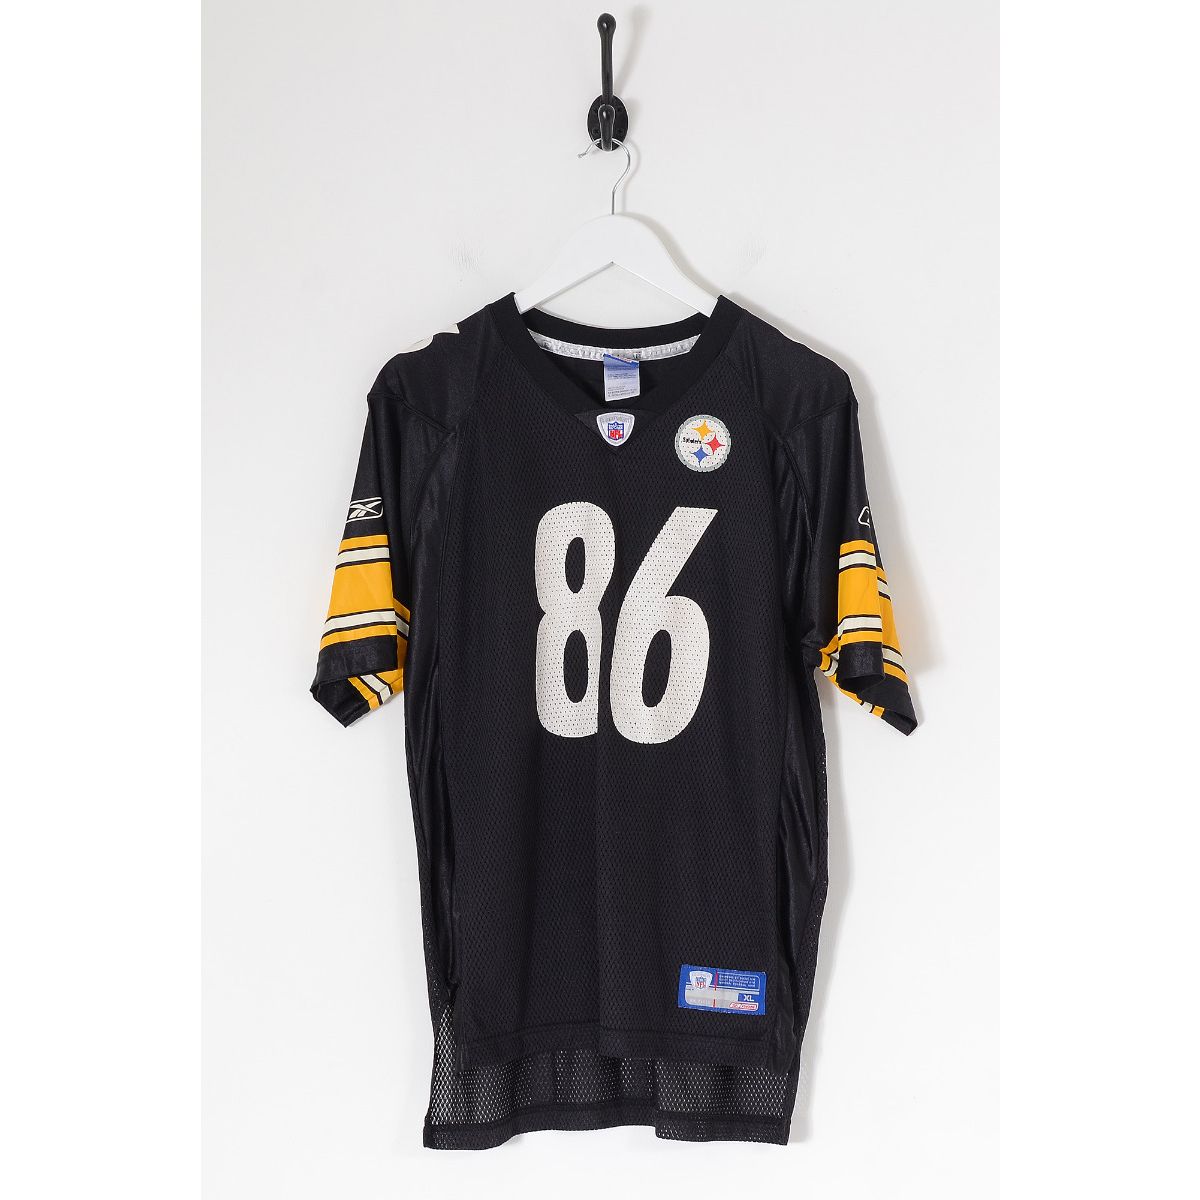 Vintage REEBOK NFL Pittsburgh Steelers American Football Jersey Black Large